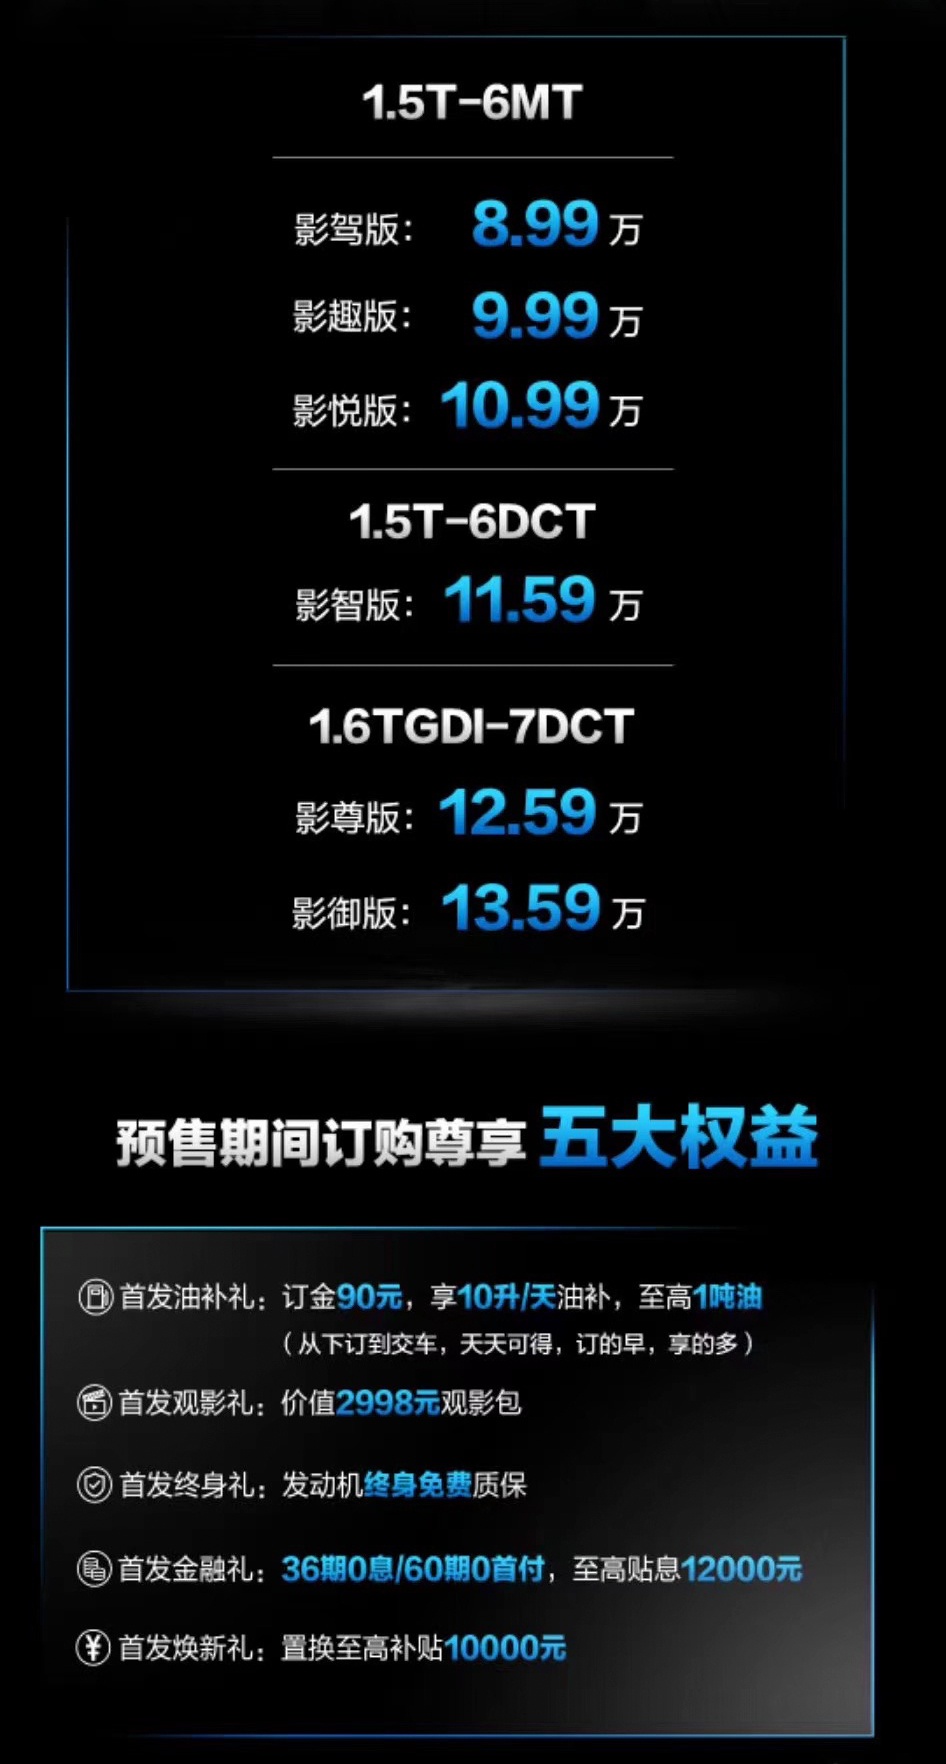 性价比再提升 捷途新款X90预售8.99-13.59万元